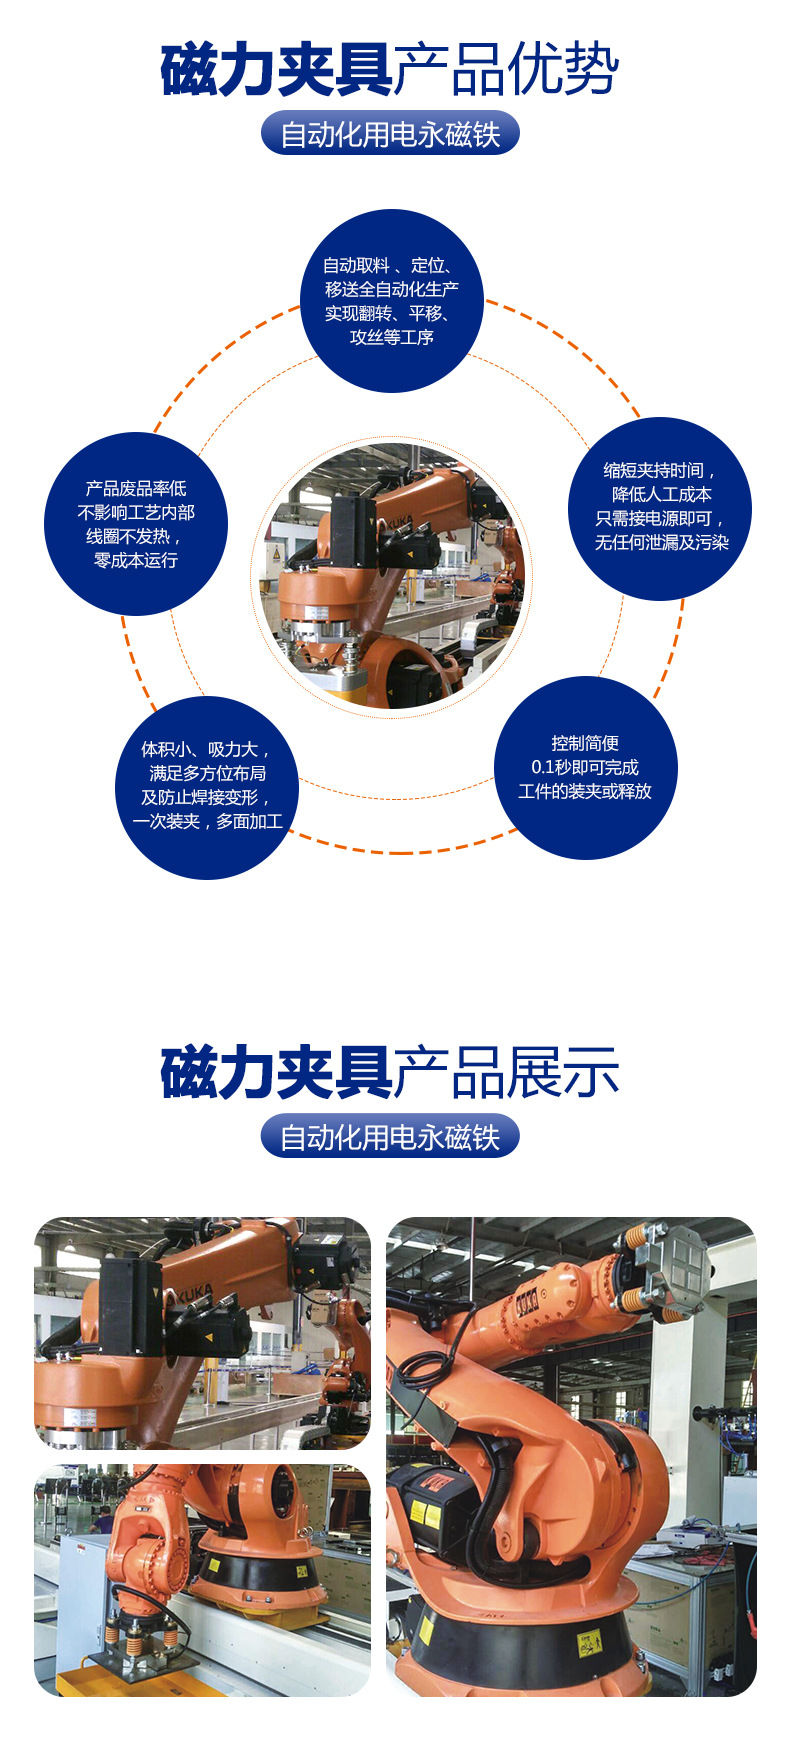 厂家直销磁力吸盘 机器人专用磁力焊接工装夹具磁力吸盘 定制款示例图3